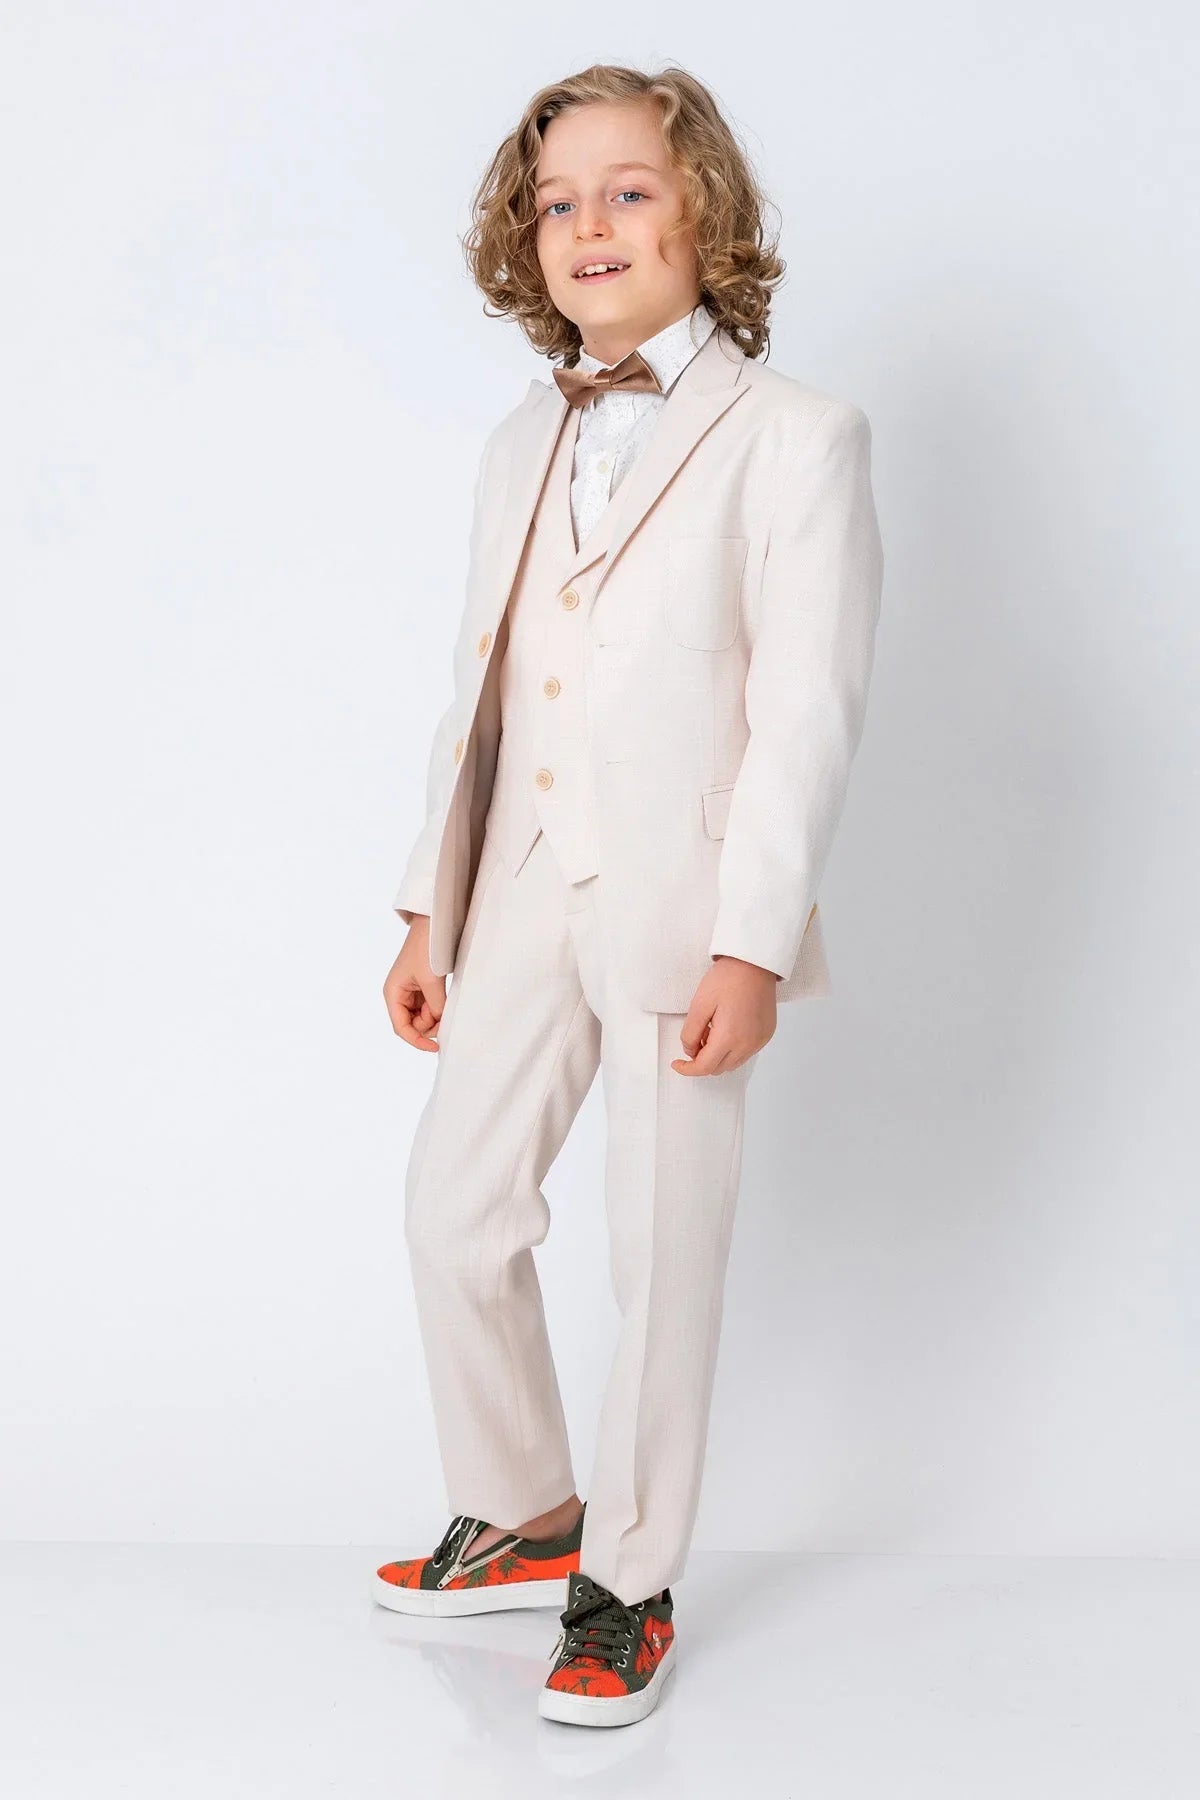 InCity Kids Boys Classic Fashion Suit Blazer InCity Boys & Girls